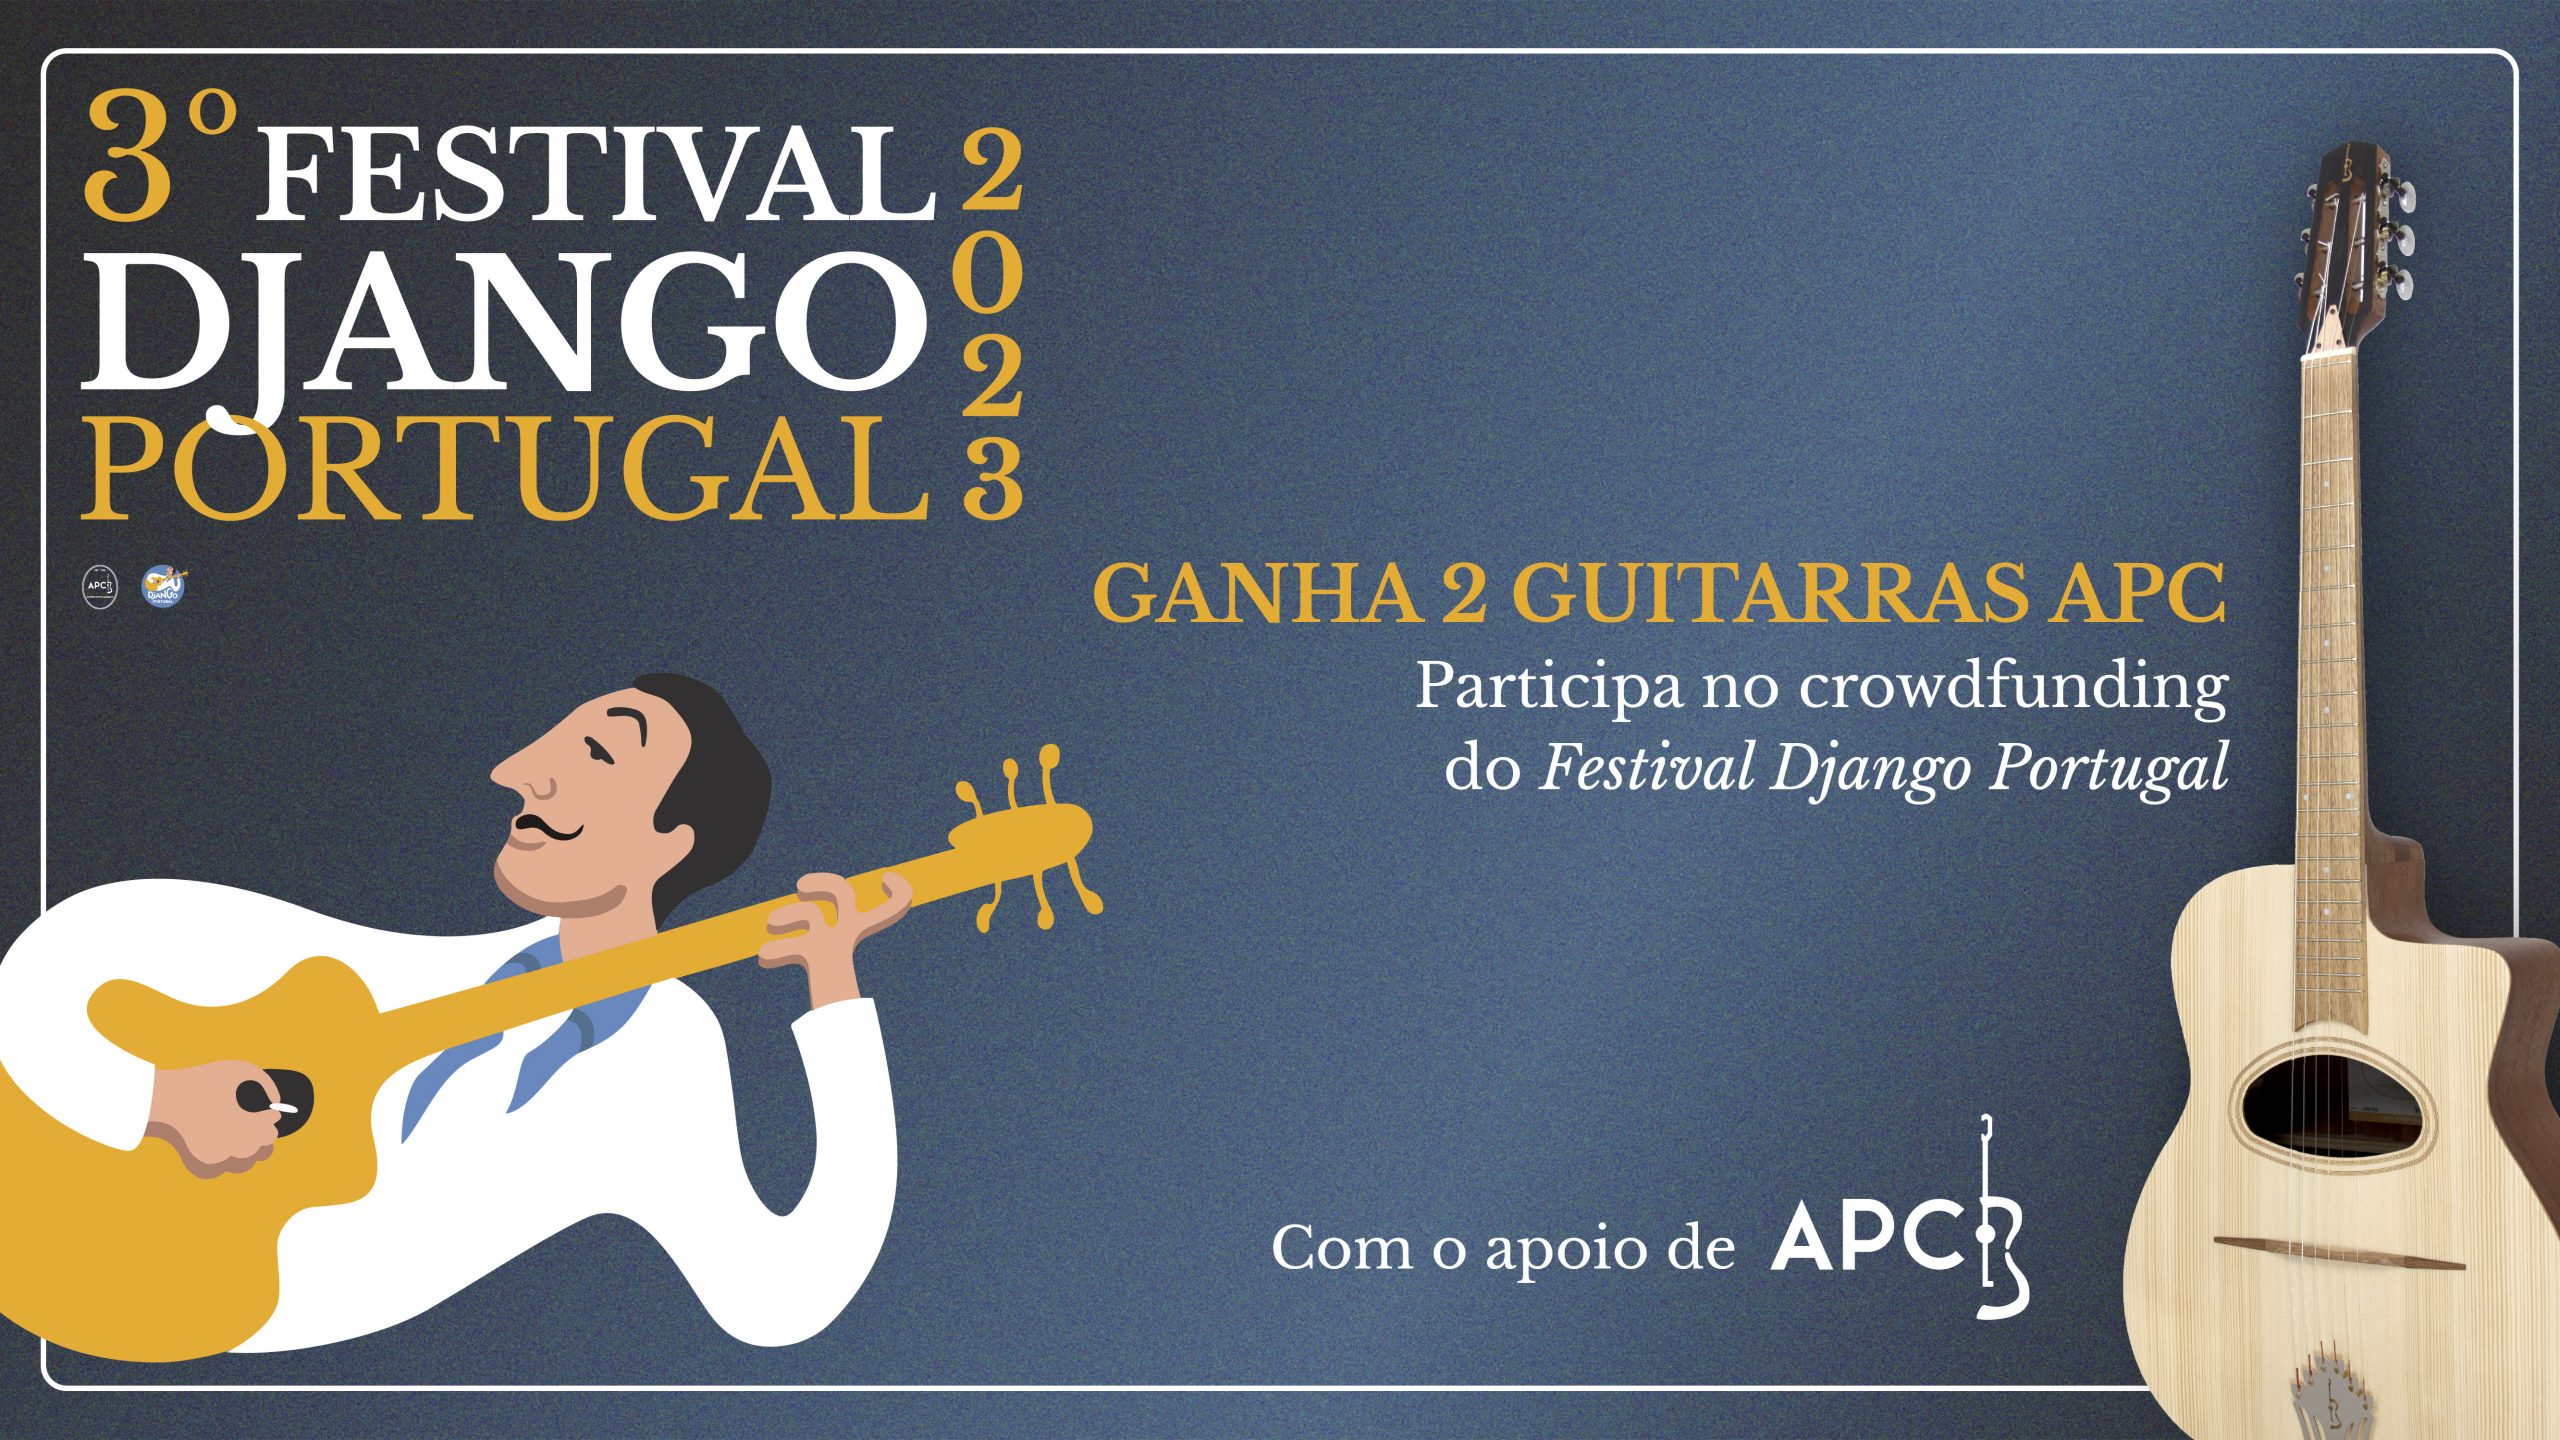 Festival Django Portugal - Sorteio de Guitarras APC